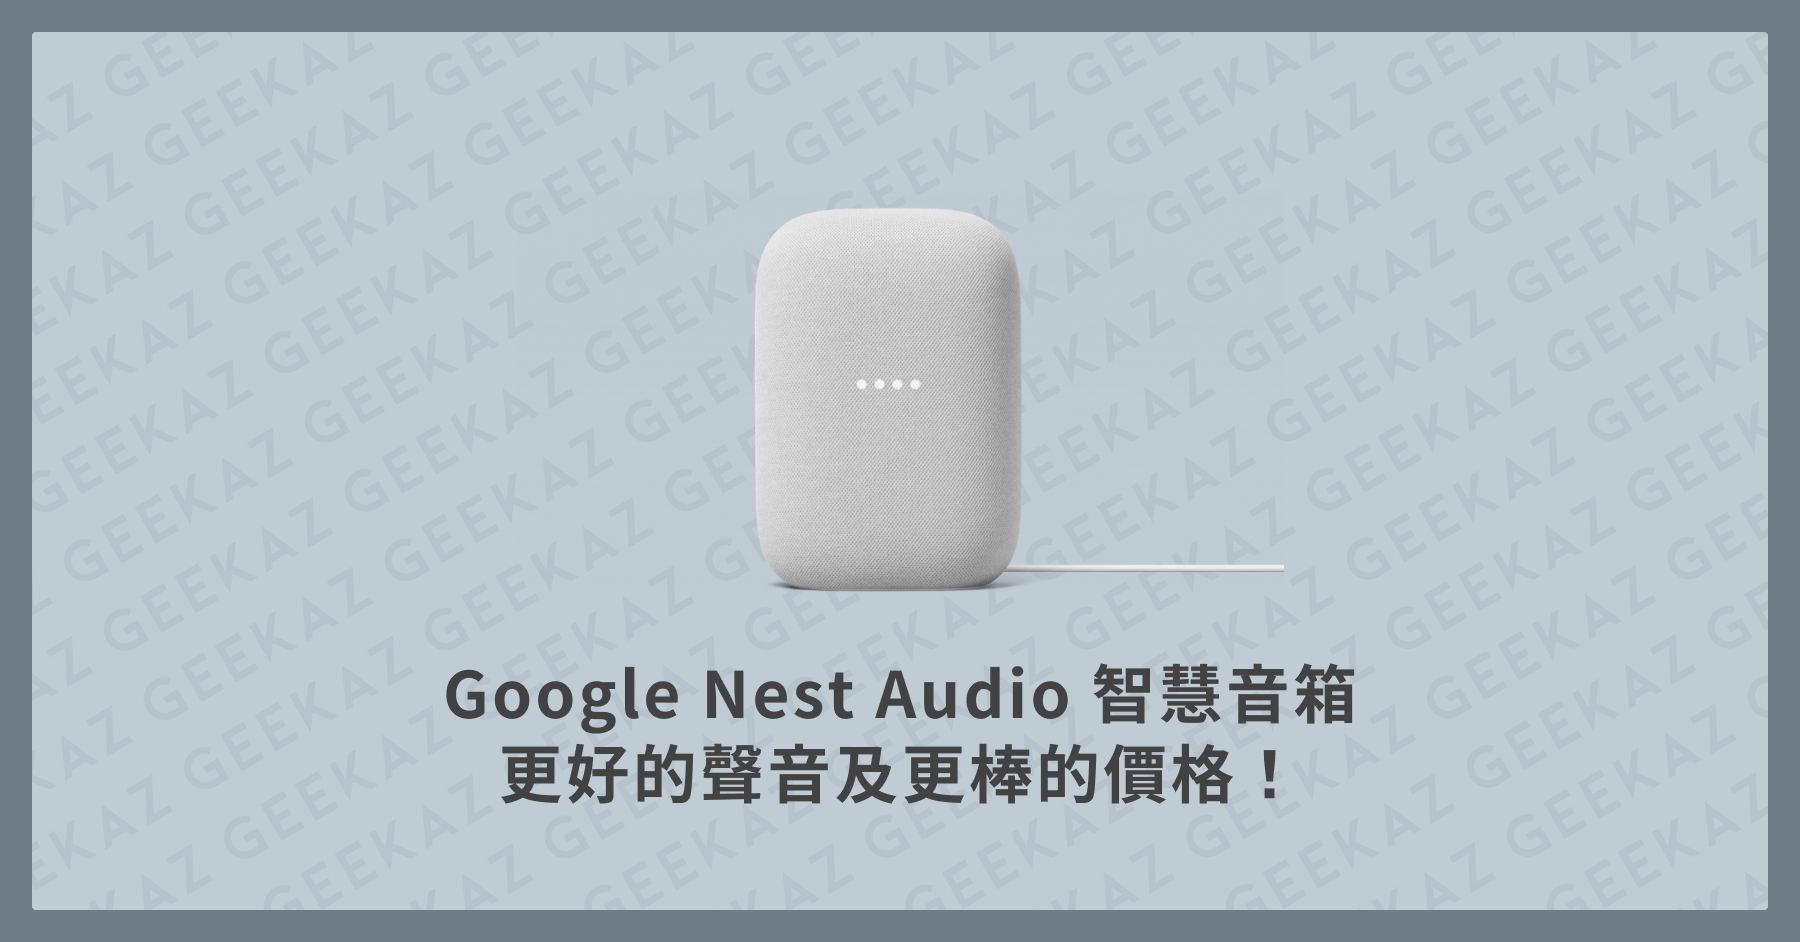 Google Nest Audio智慧音箱